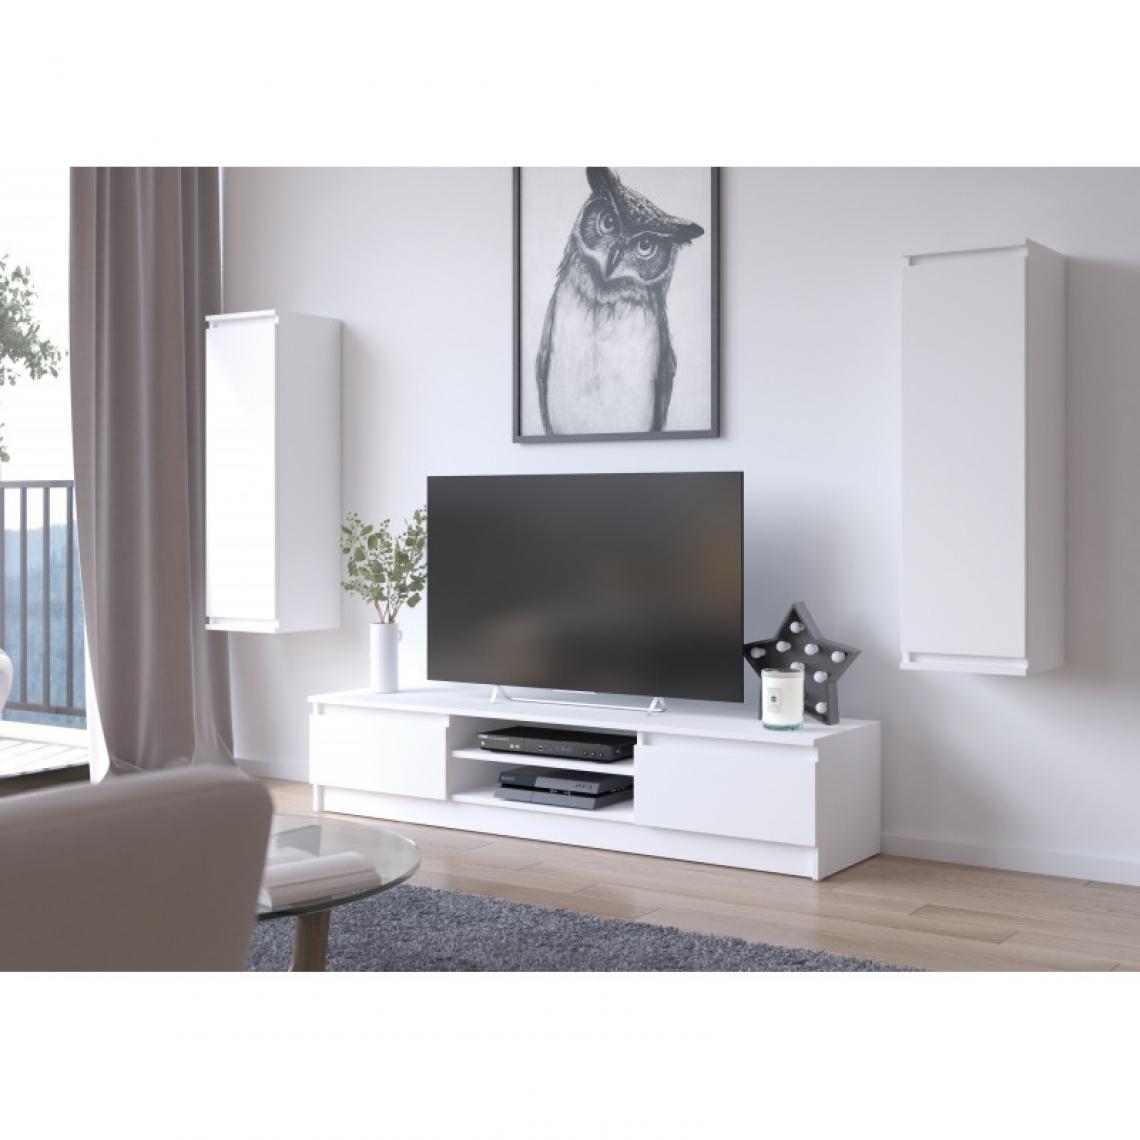 Hucoco - SUBLIM - Ensemble de meubles élégants salon/séjour - 3 éléments meuble TV 2 étagères murales - Style pratique moderne - Blanc - Meubles TV, Hi-Fi